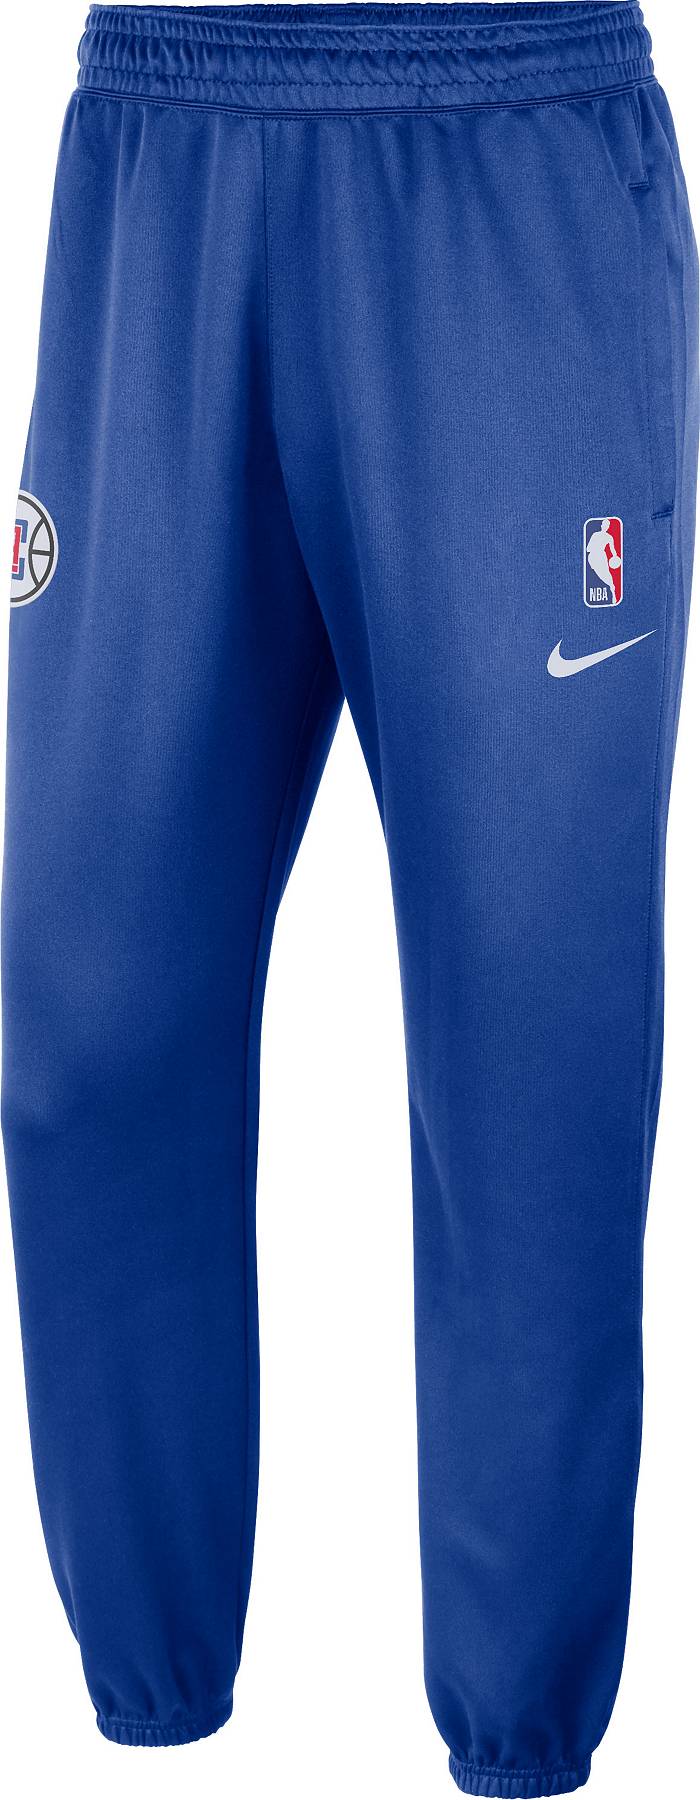 LA Clippers Men's Nike NBA Shorts